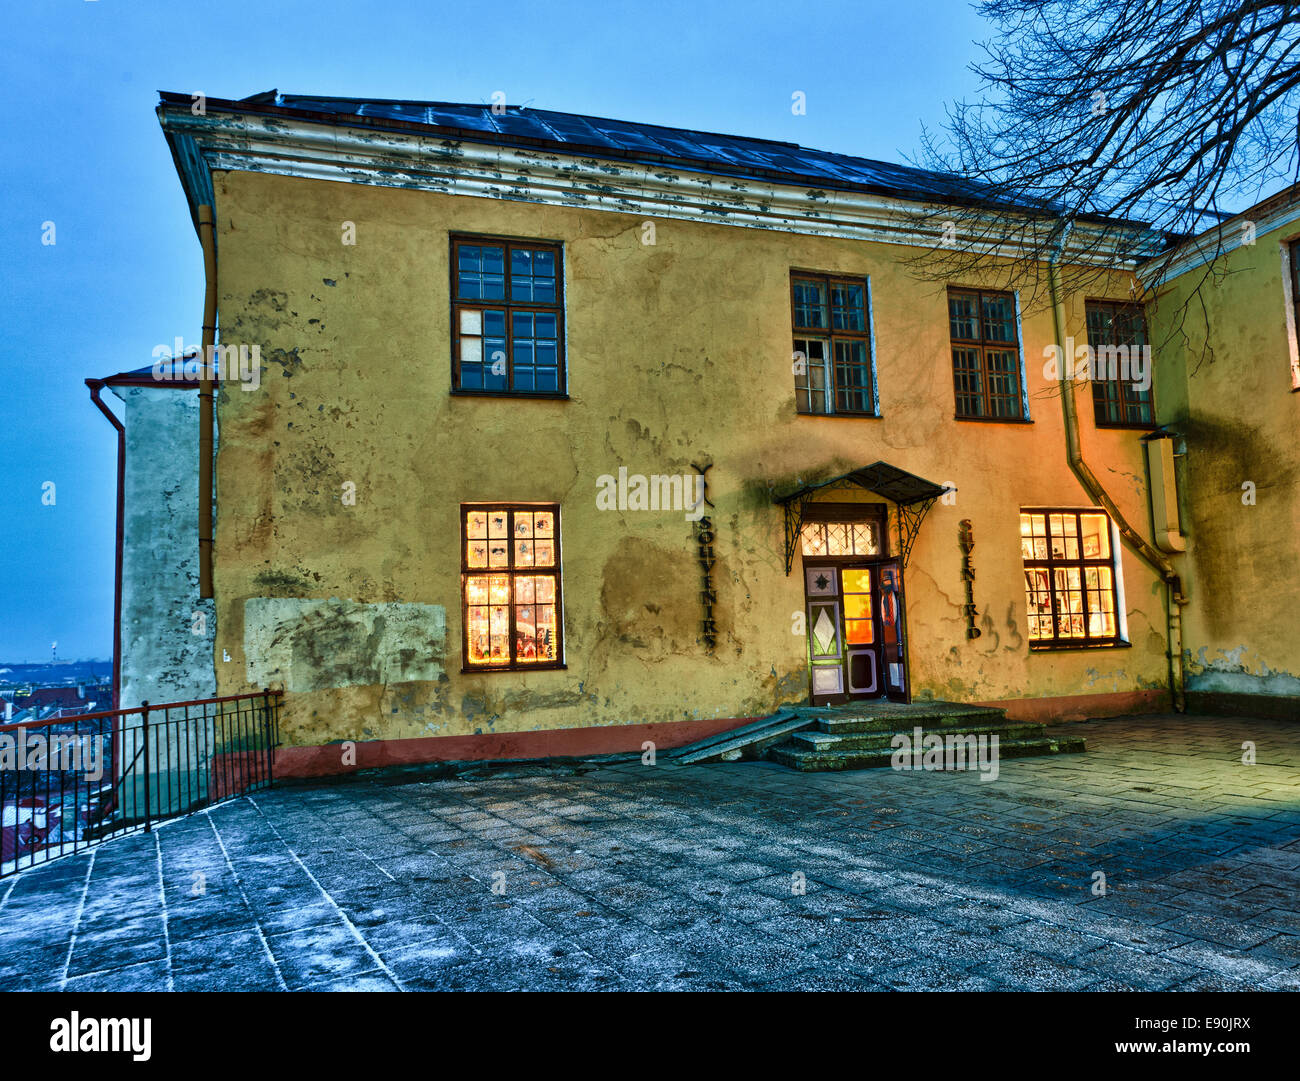 Old town of Tallinn Stock Photo